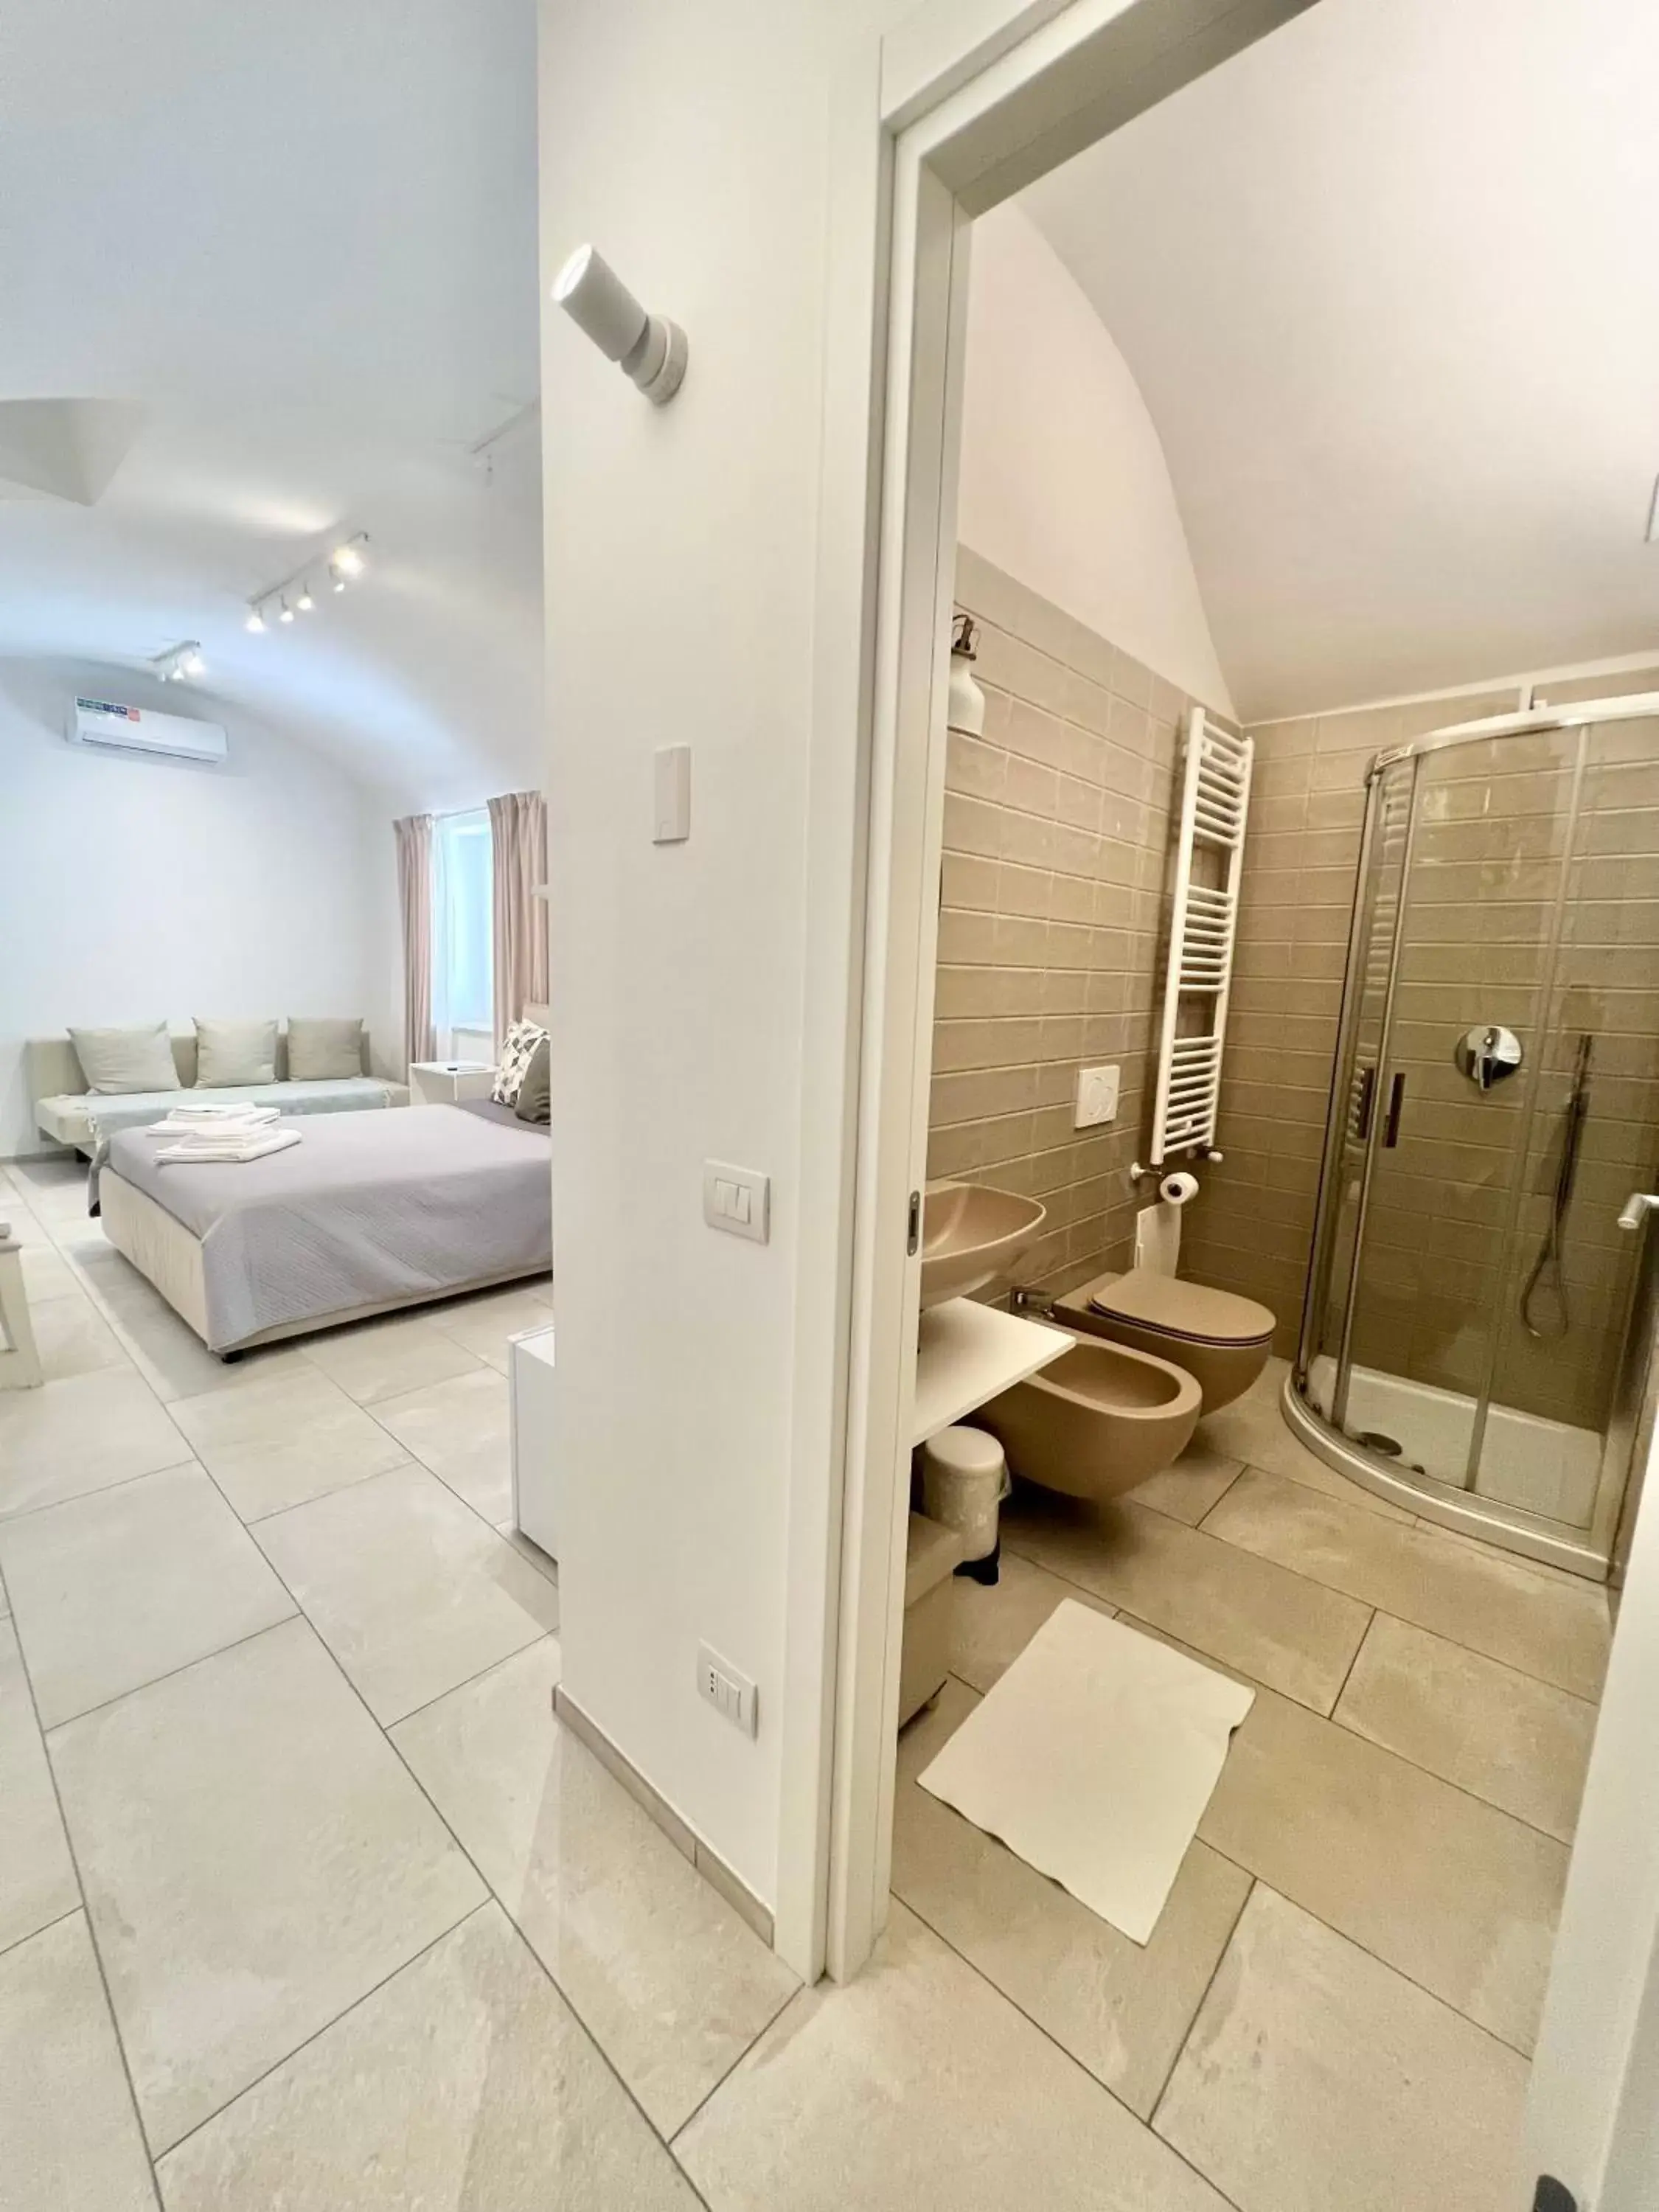 Photo of the whole room, Bathroom in L Antico Forno Bari Centro Storico